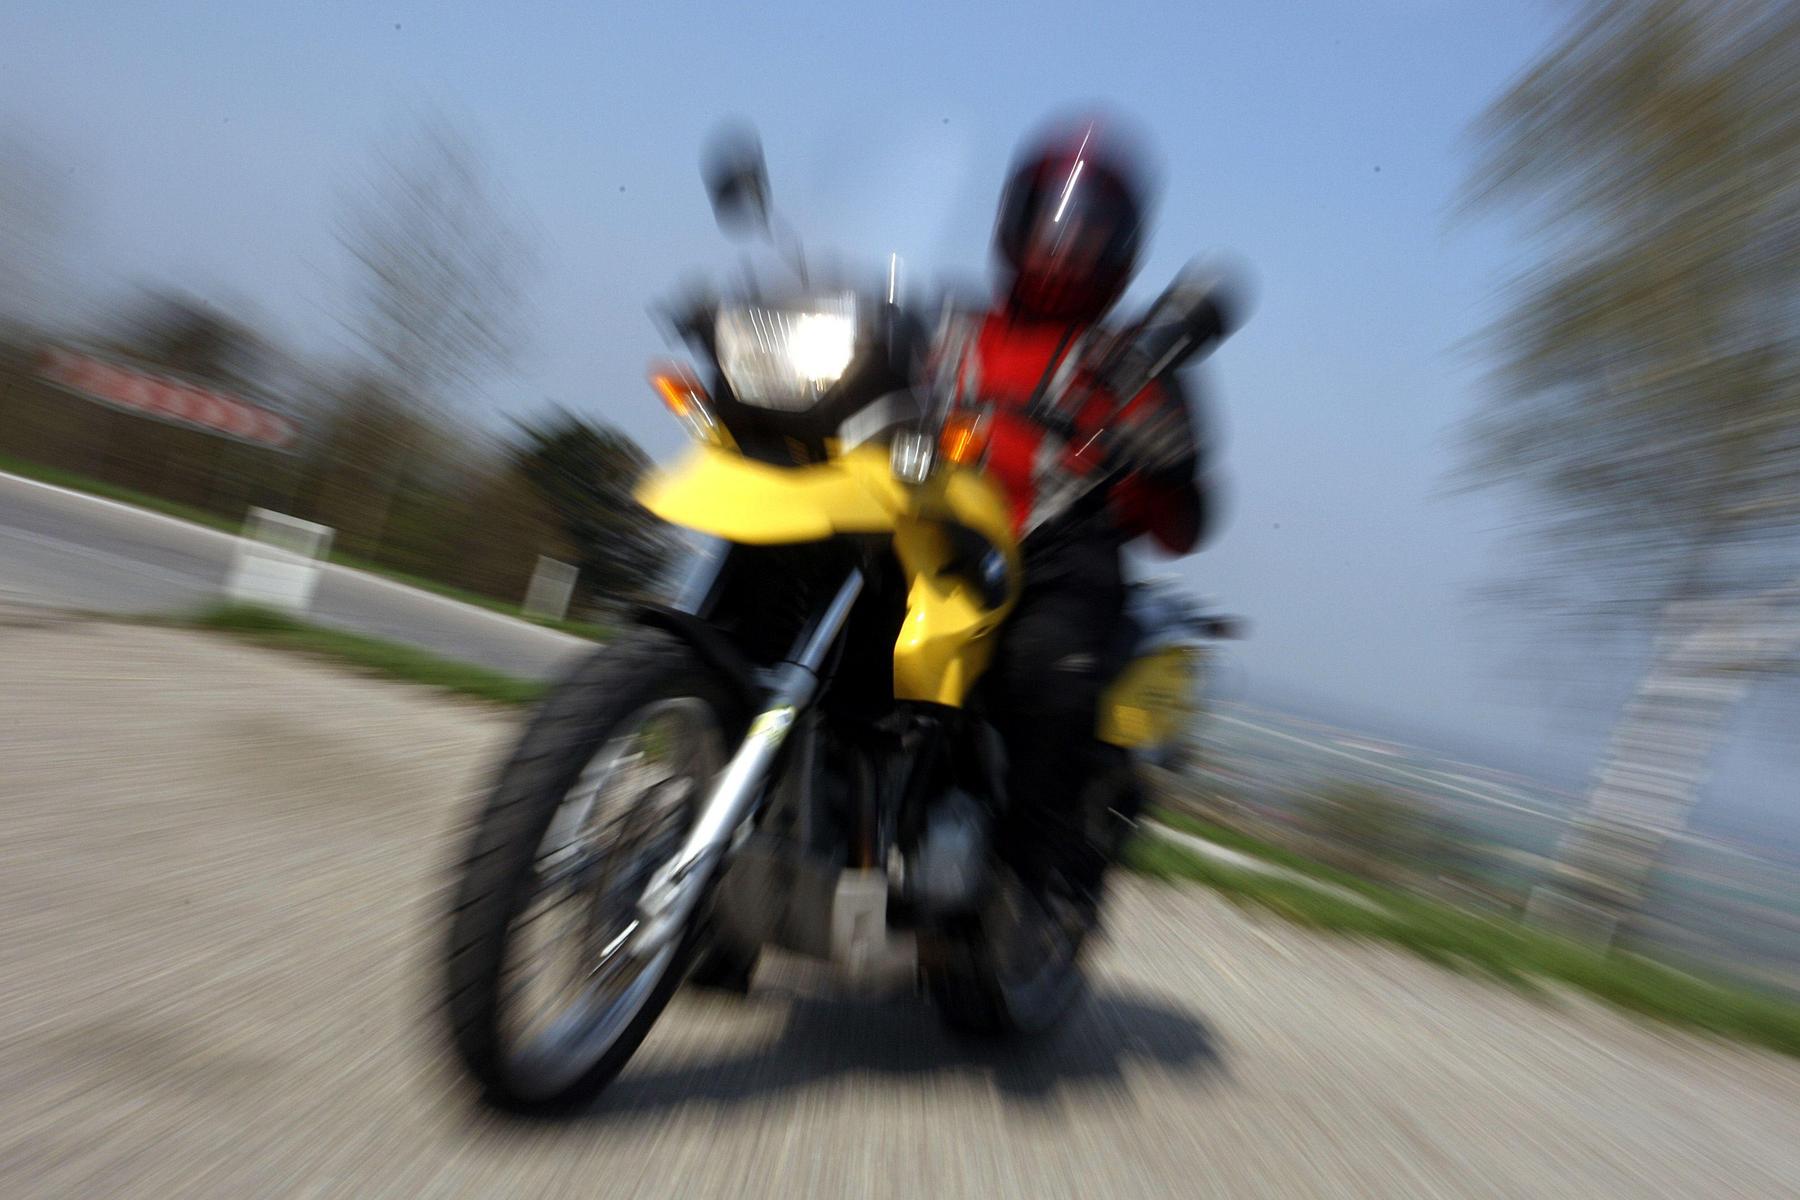 In Kurve gestürzt: Zu schnell: Ausfahrt endete für zwei Motorradfahrer im Spital